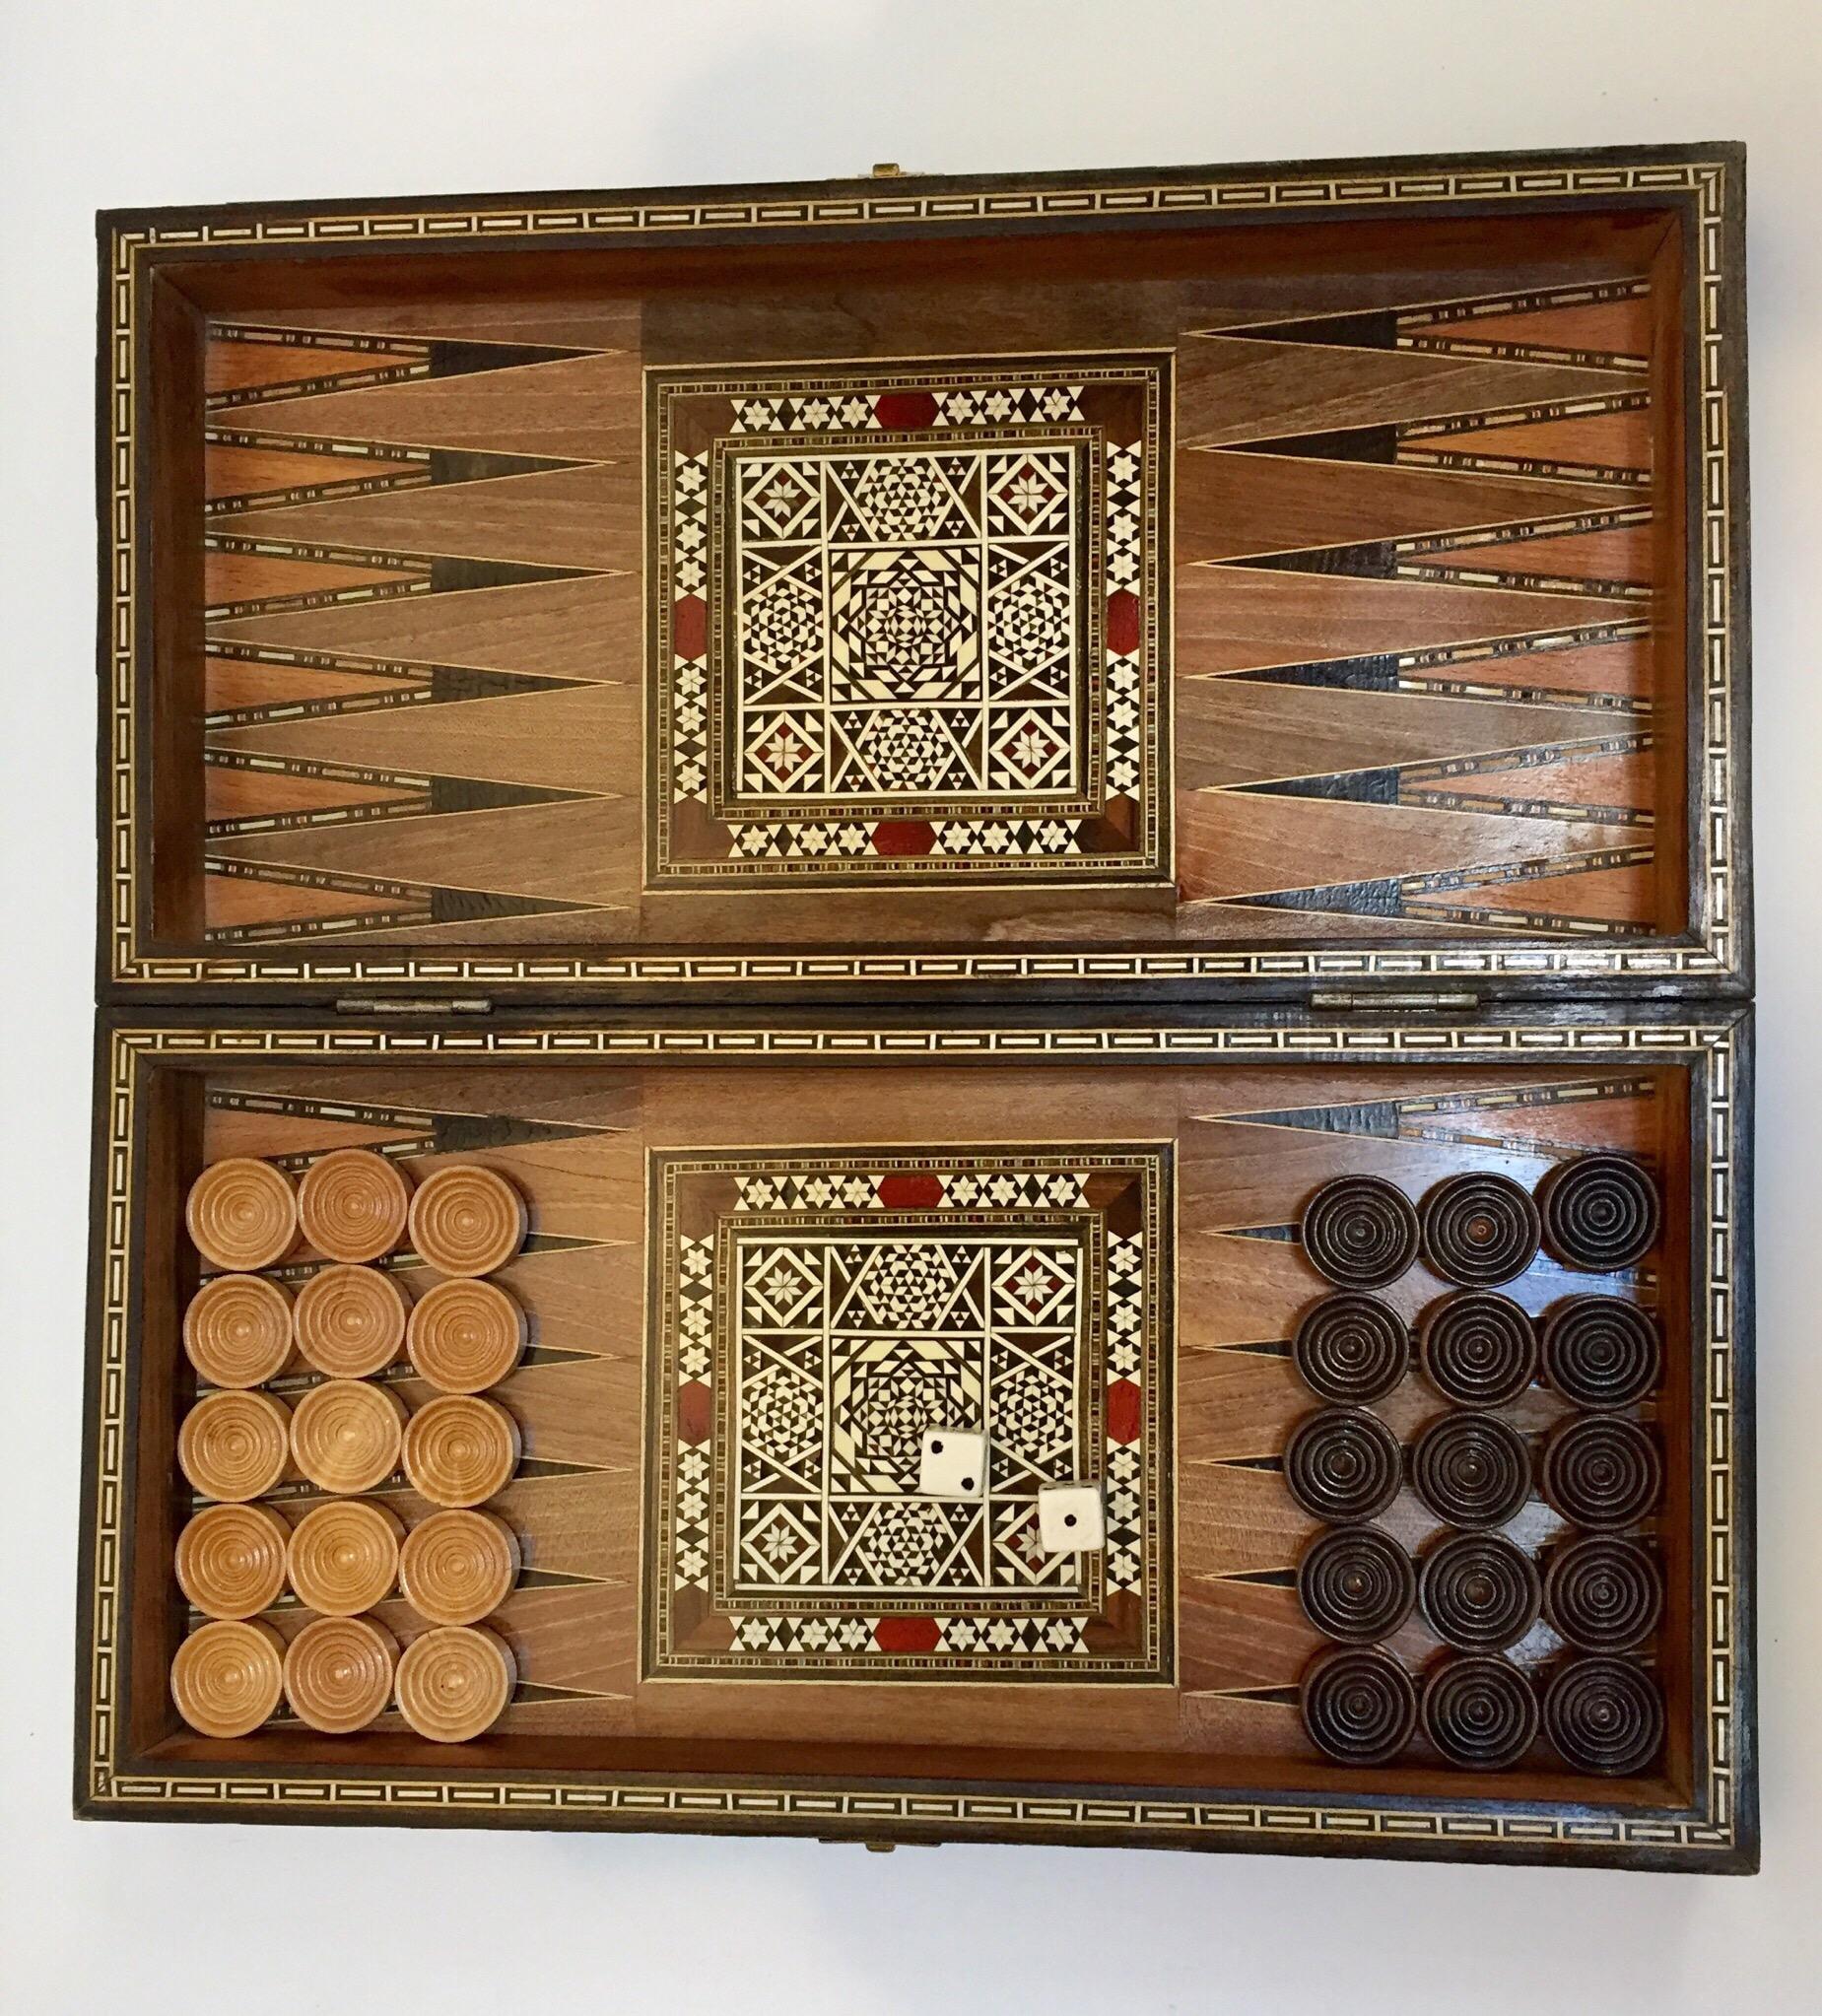 Vieux grand jeu complet de backgammon et d'echecs en mosaique incrustee syrienne 3